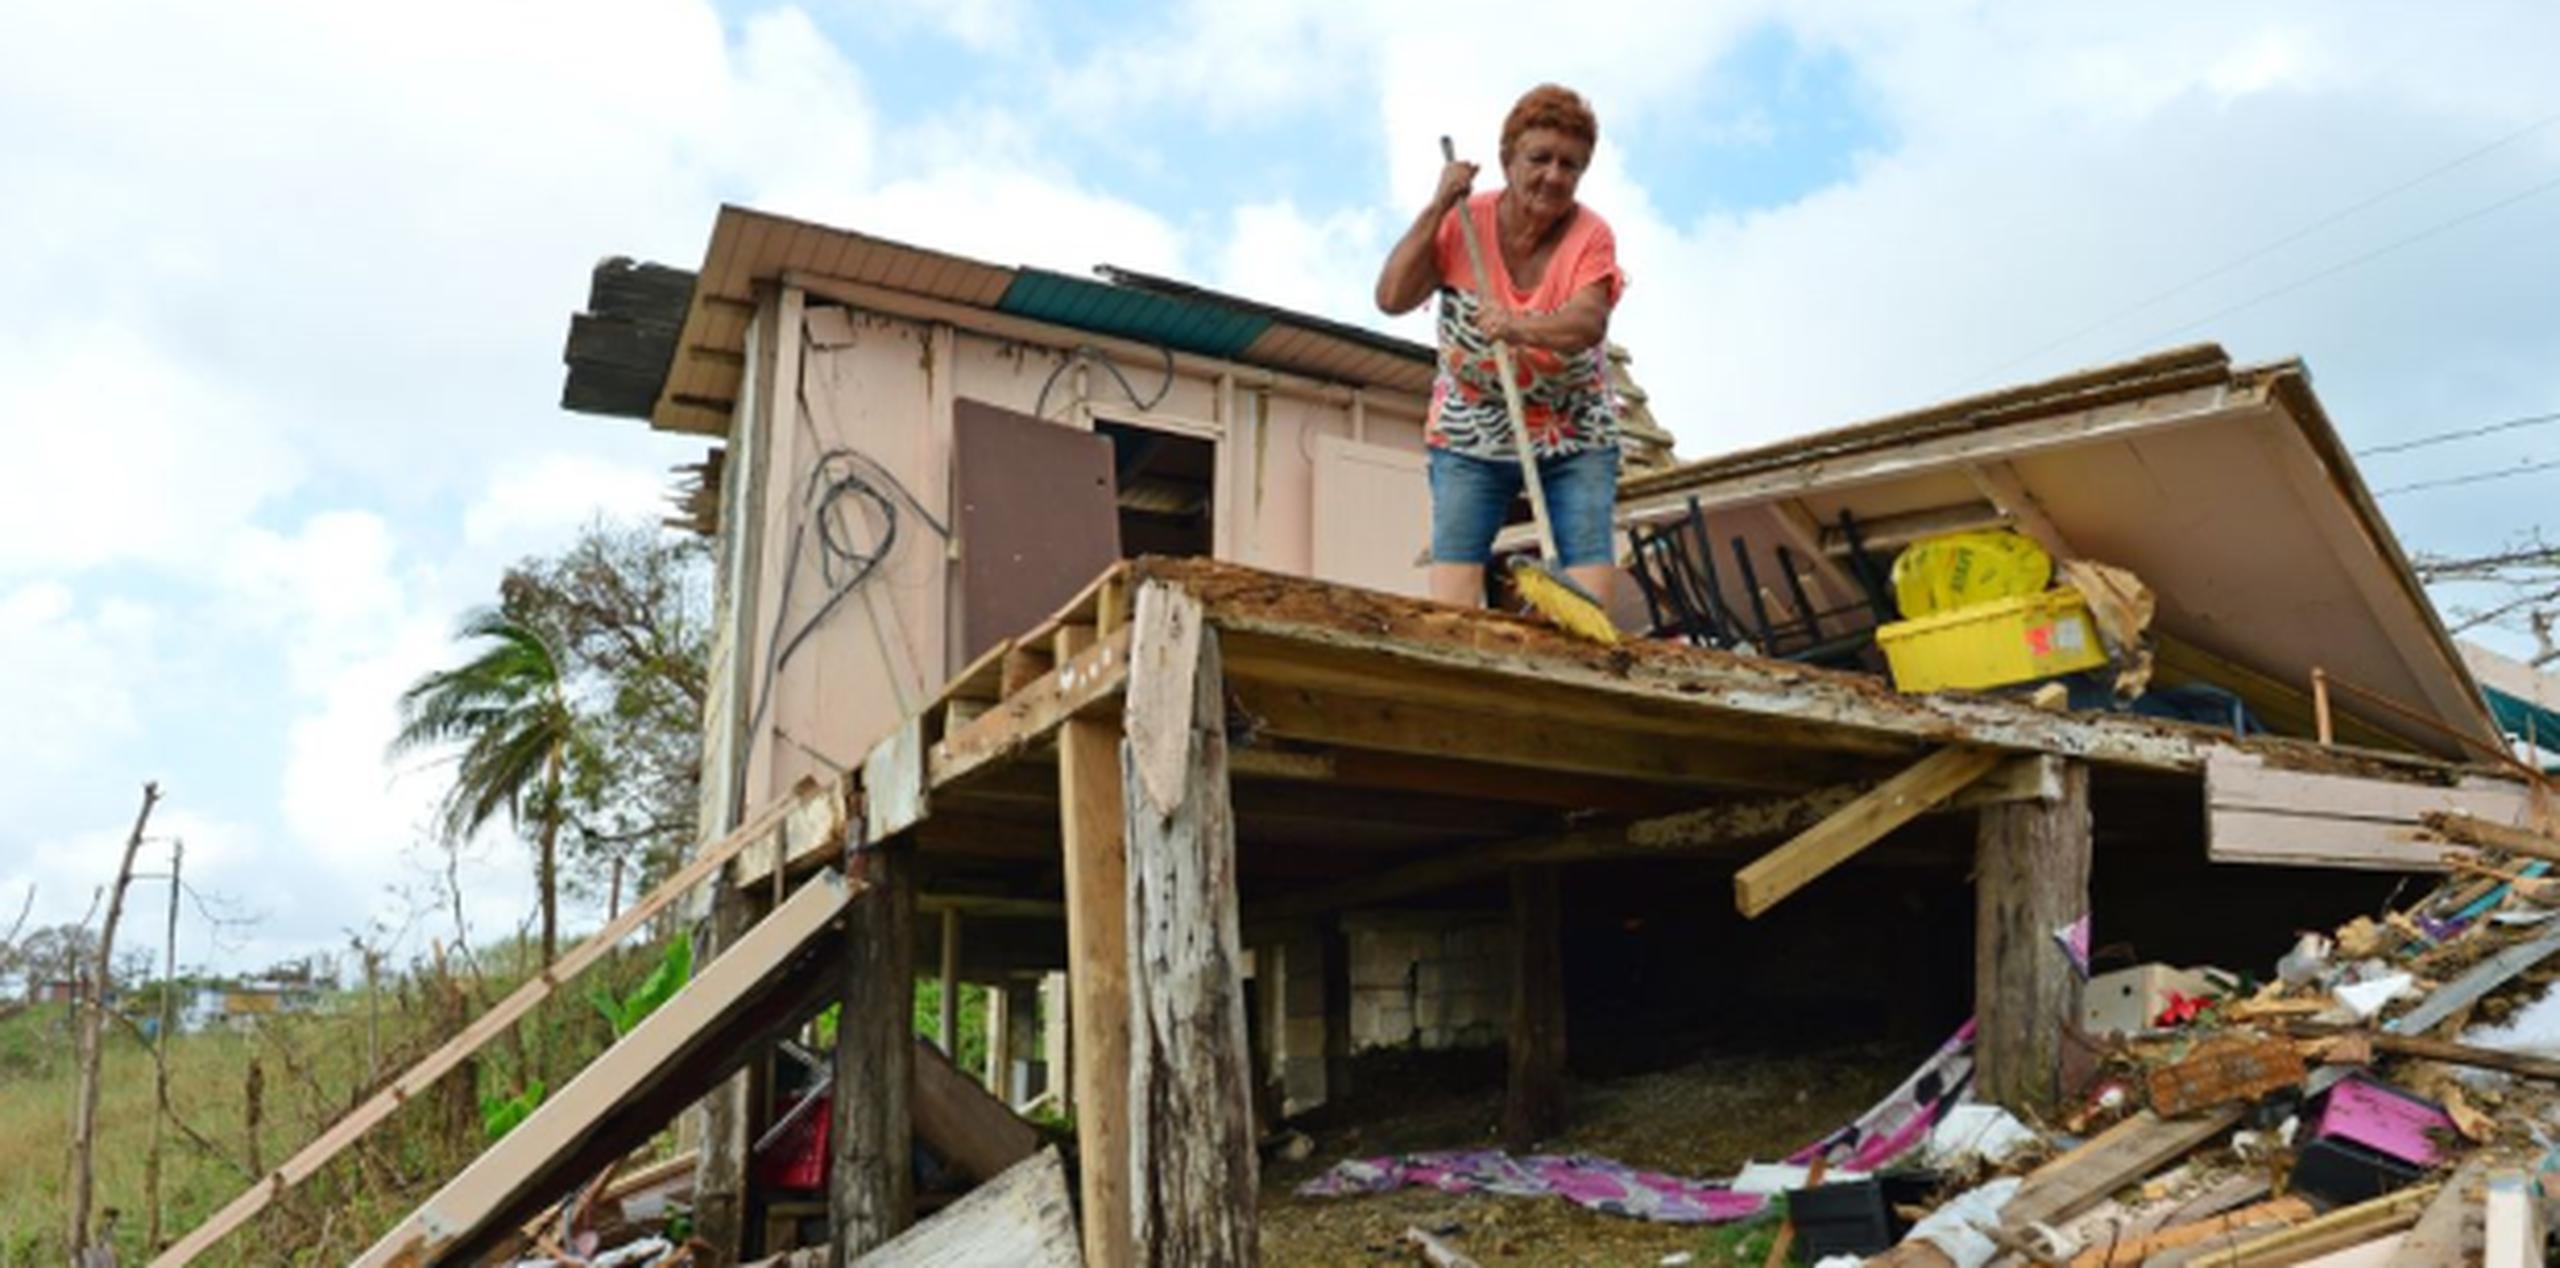 El reporte se difundió apenas días después de que un experto de Naciones Unidas en pobreza extrema y derechos humanos visitó Puerto Rico para evaluar las necesidades y los daños. (luis.alcaladelolmo@gfrmedia.com)